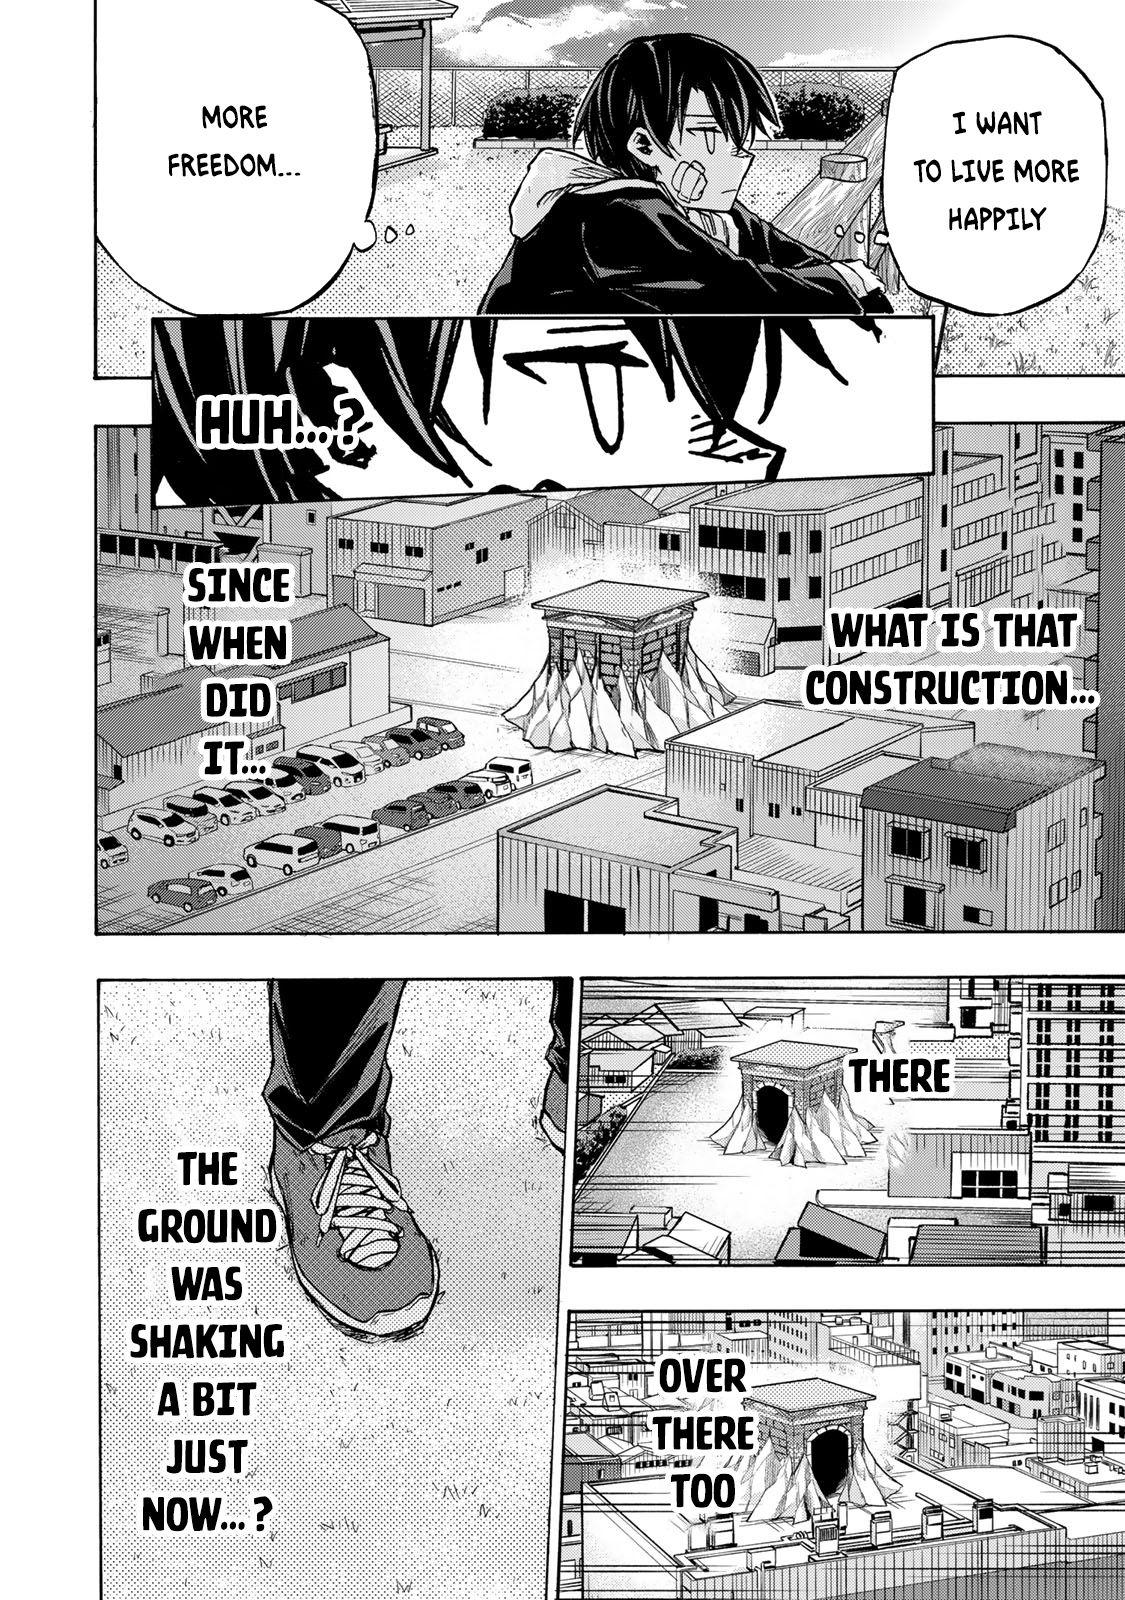 Saikyou de Saisoku no Mugen Level Up Ch.1 Page 2 - Mangago